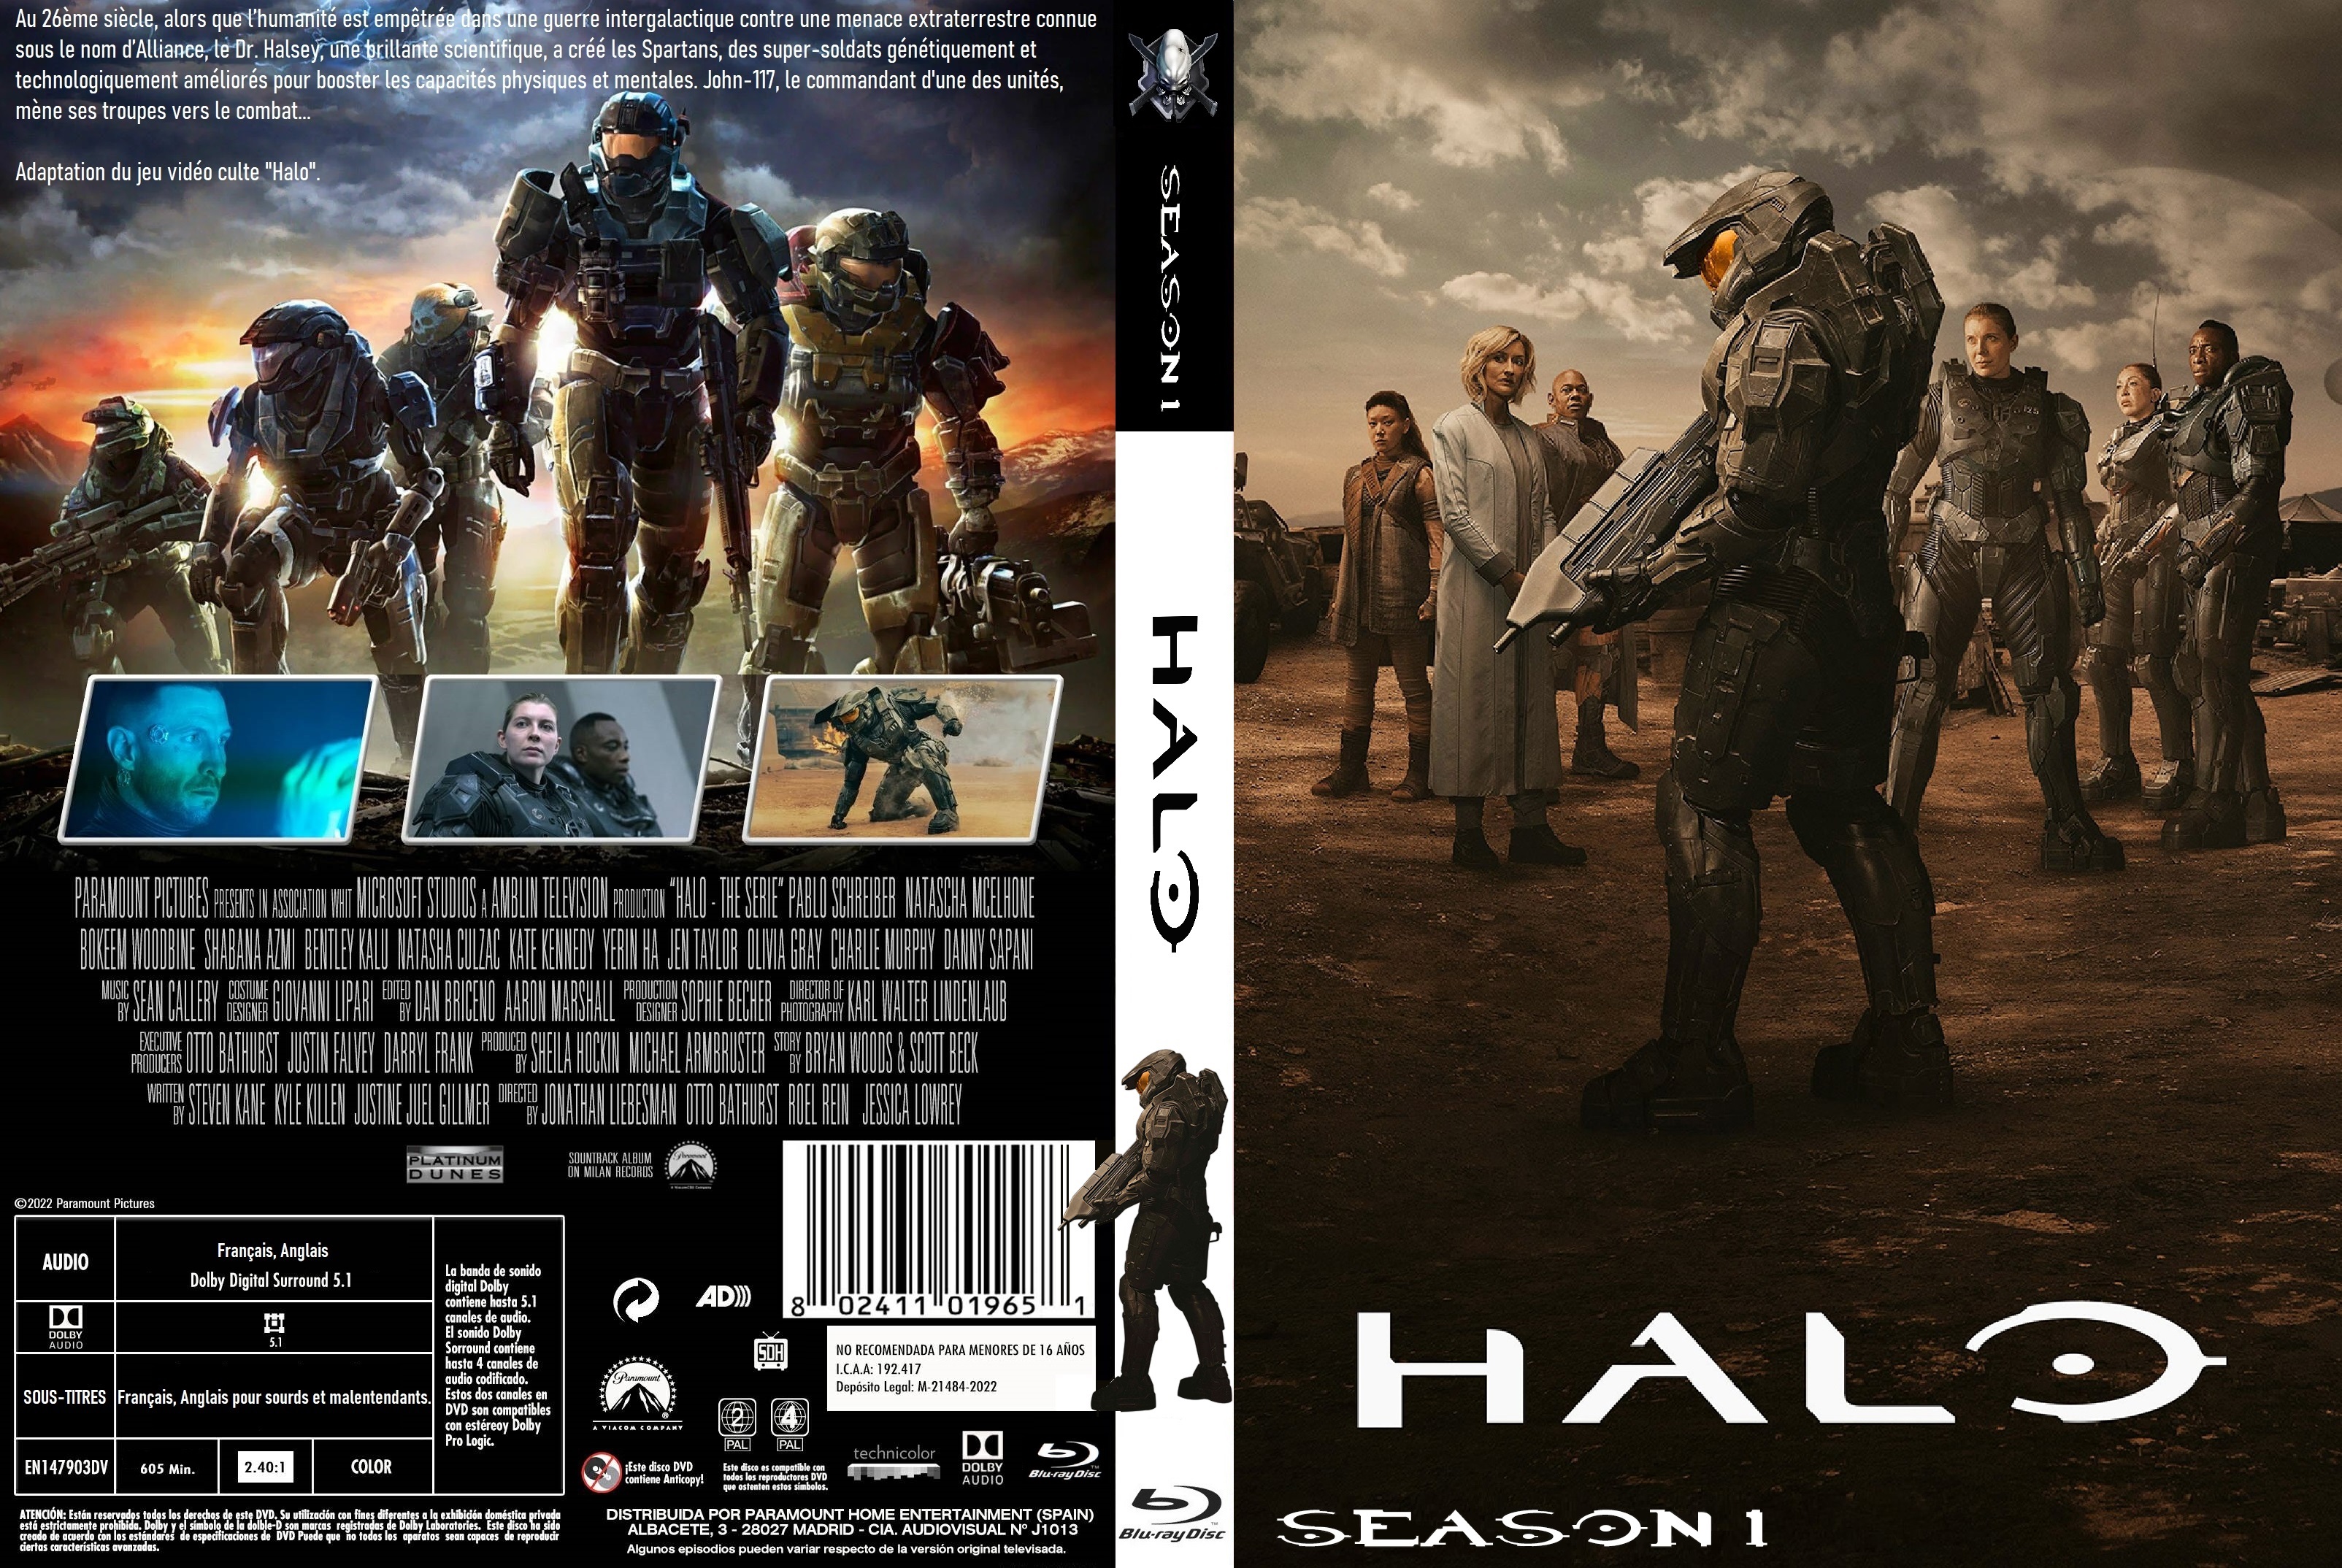 Jaquette DVD Halo saison 1 custom v2